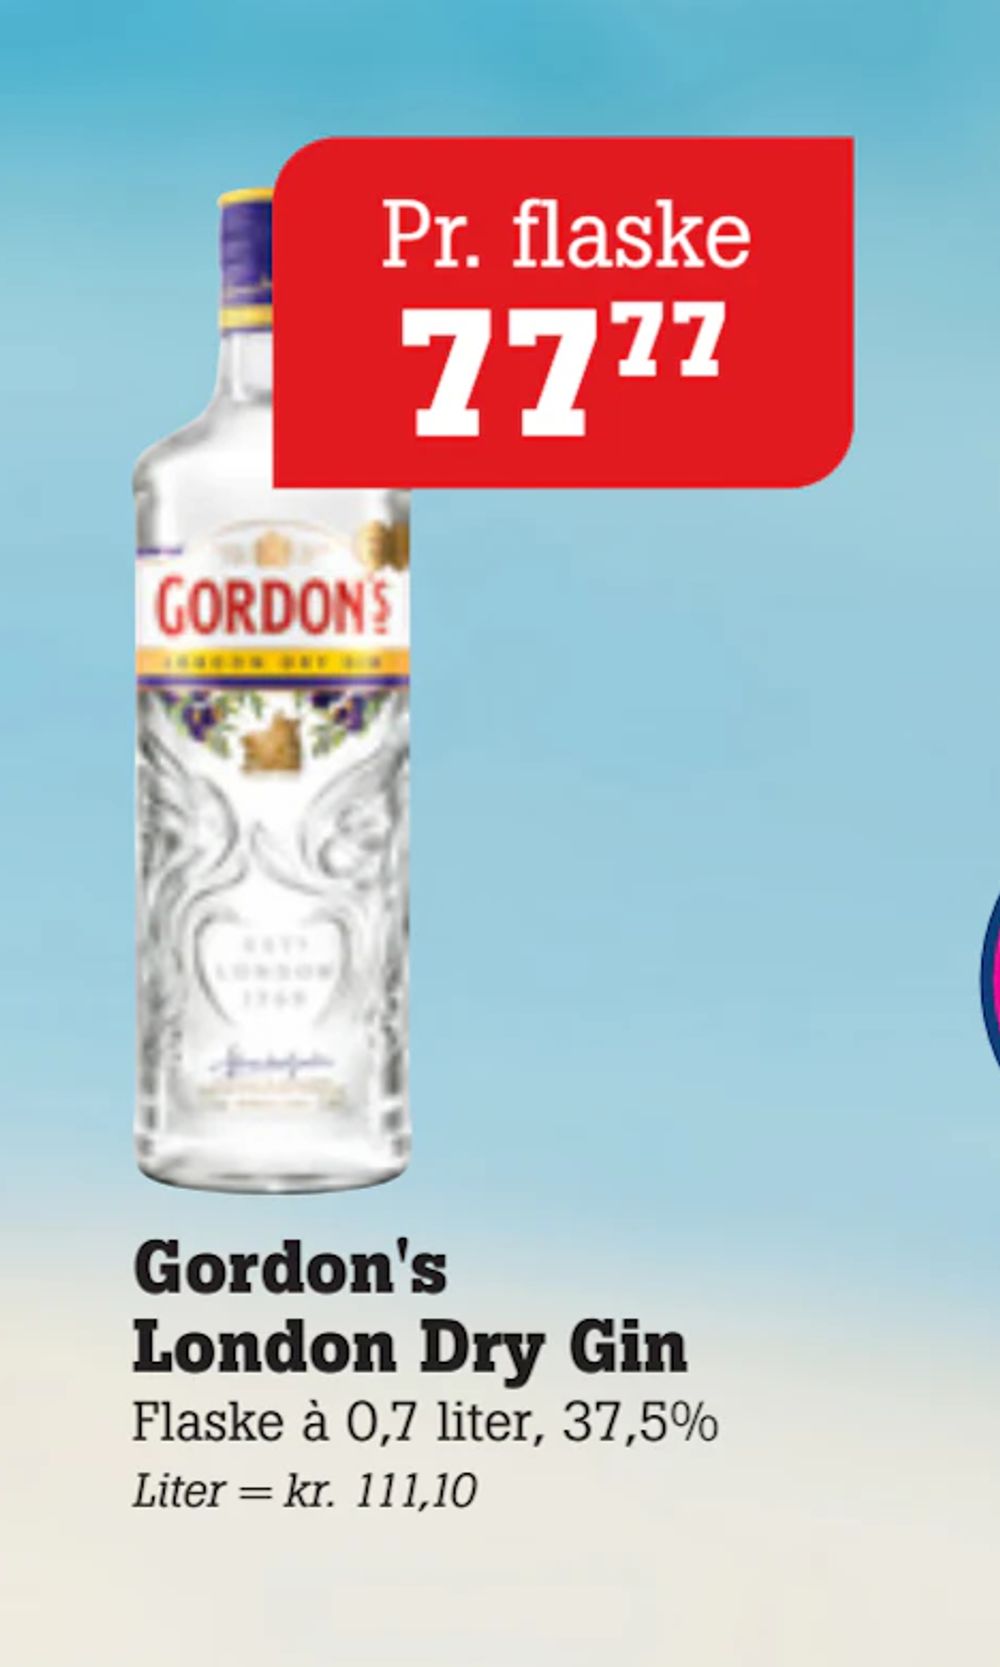 Tilbud på Gordon's London Dry Gin fra Poetzsch Padborg til 77,77 kr.